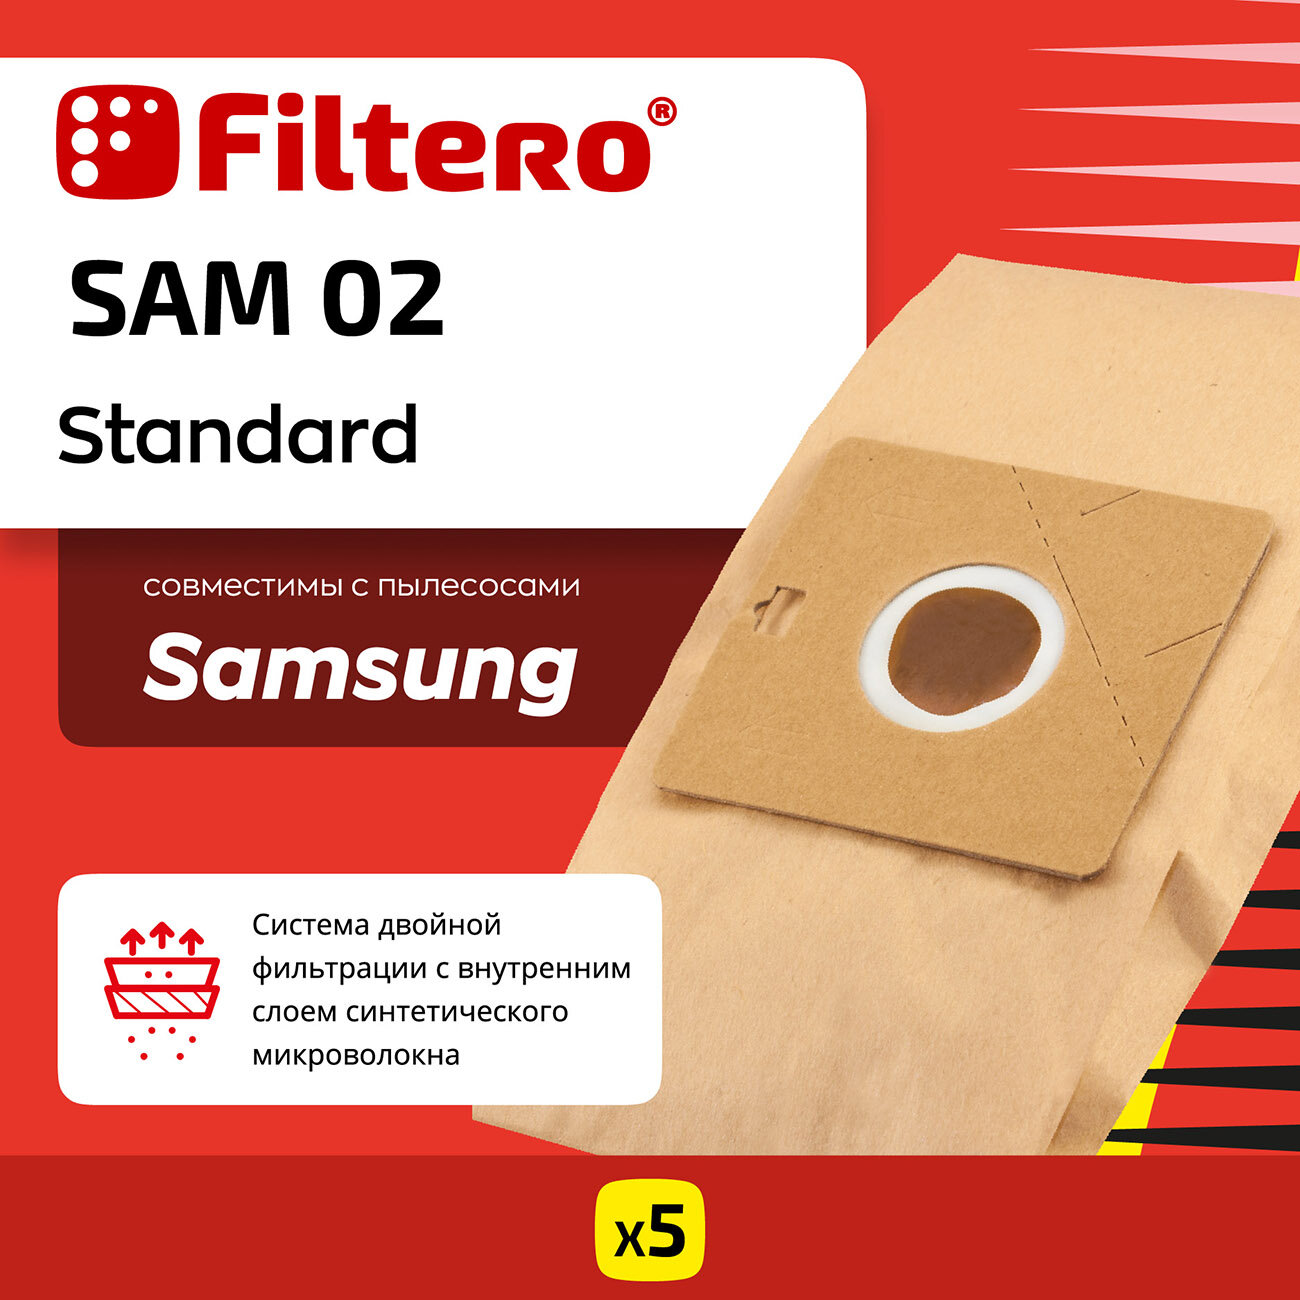 Мешки-пылесборники Filtero SAM 02 Standard для пылесосов SAMSUNG, тип VP-95B, бумажные, 5 шт.